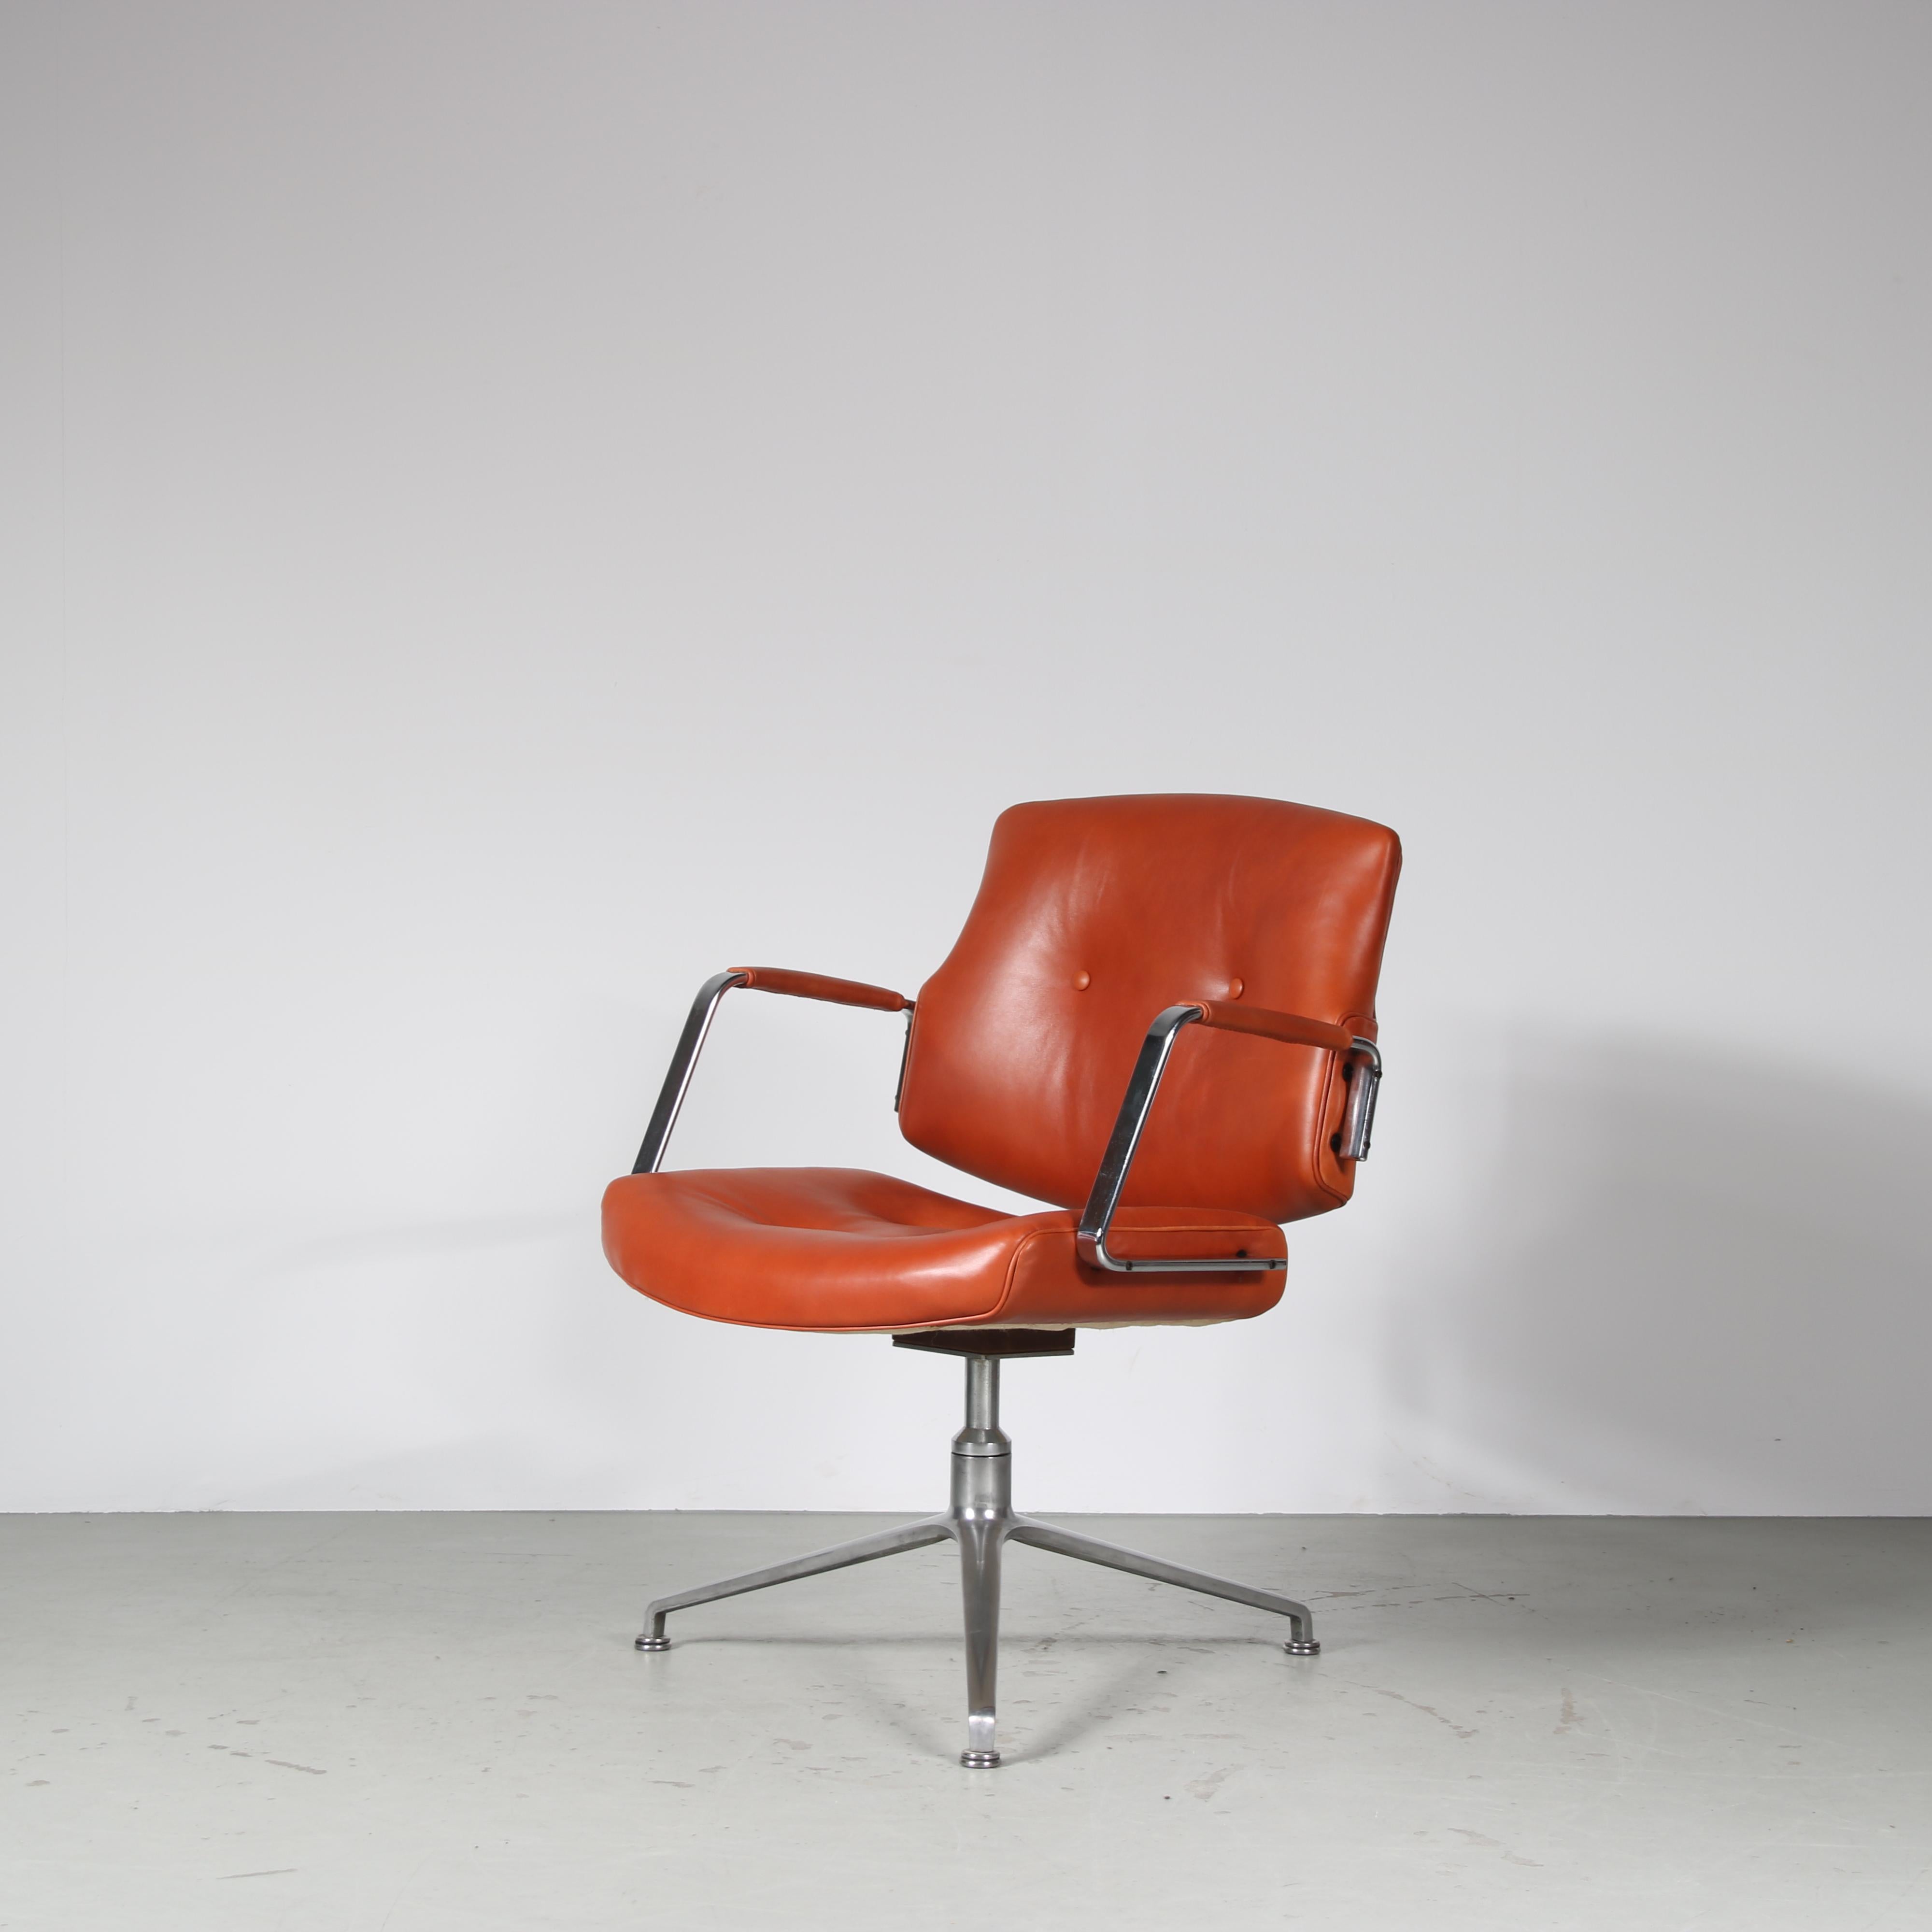 Un fantastique siège de bureau conçu par Preben Fabricius et Jorgen Kastholm, fabriqué par Kill International en Allemagne vers 1970.

Cette chaise accrocheuse est dotée d'une élégante base tubulaire en métal chromé qui complète le riche revêtement